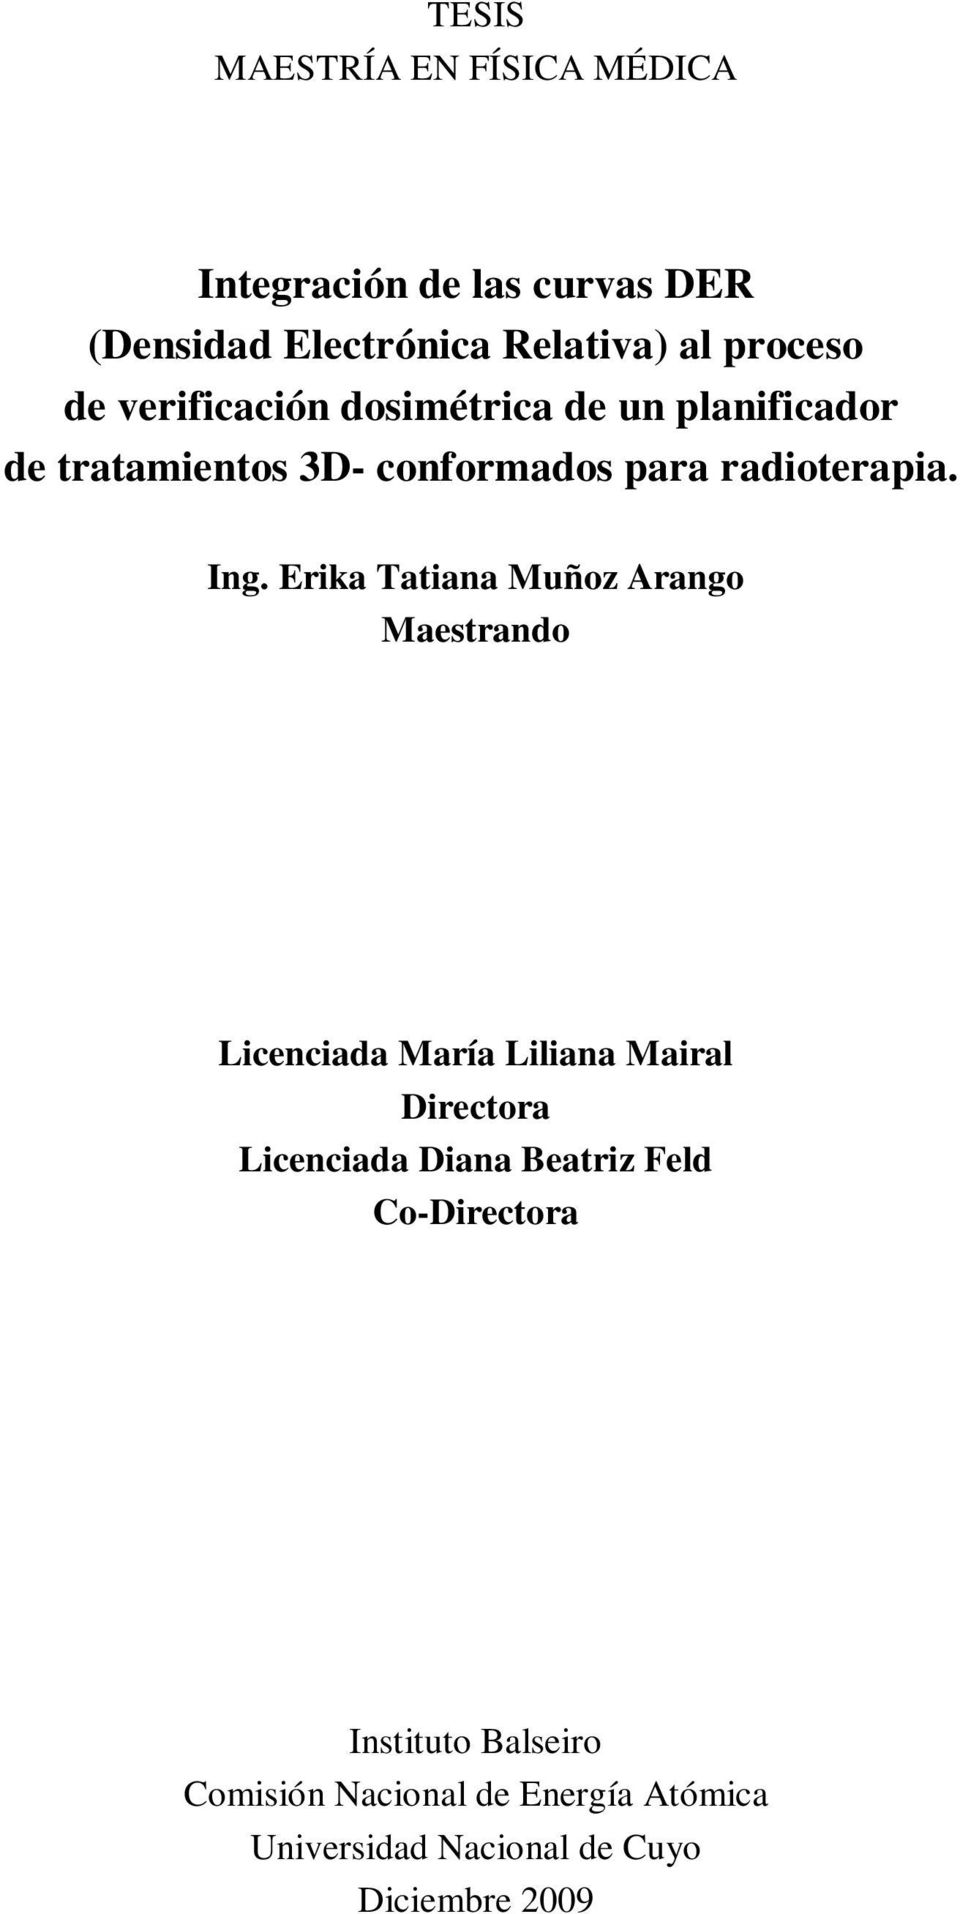 Erika Tatiana Muñoz Arango Maestrando Licenciada María Liliana Mairal Directora Licenciada Diana Beatriz